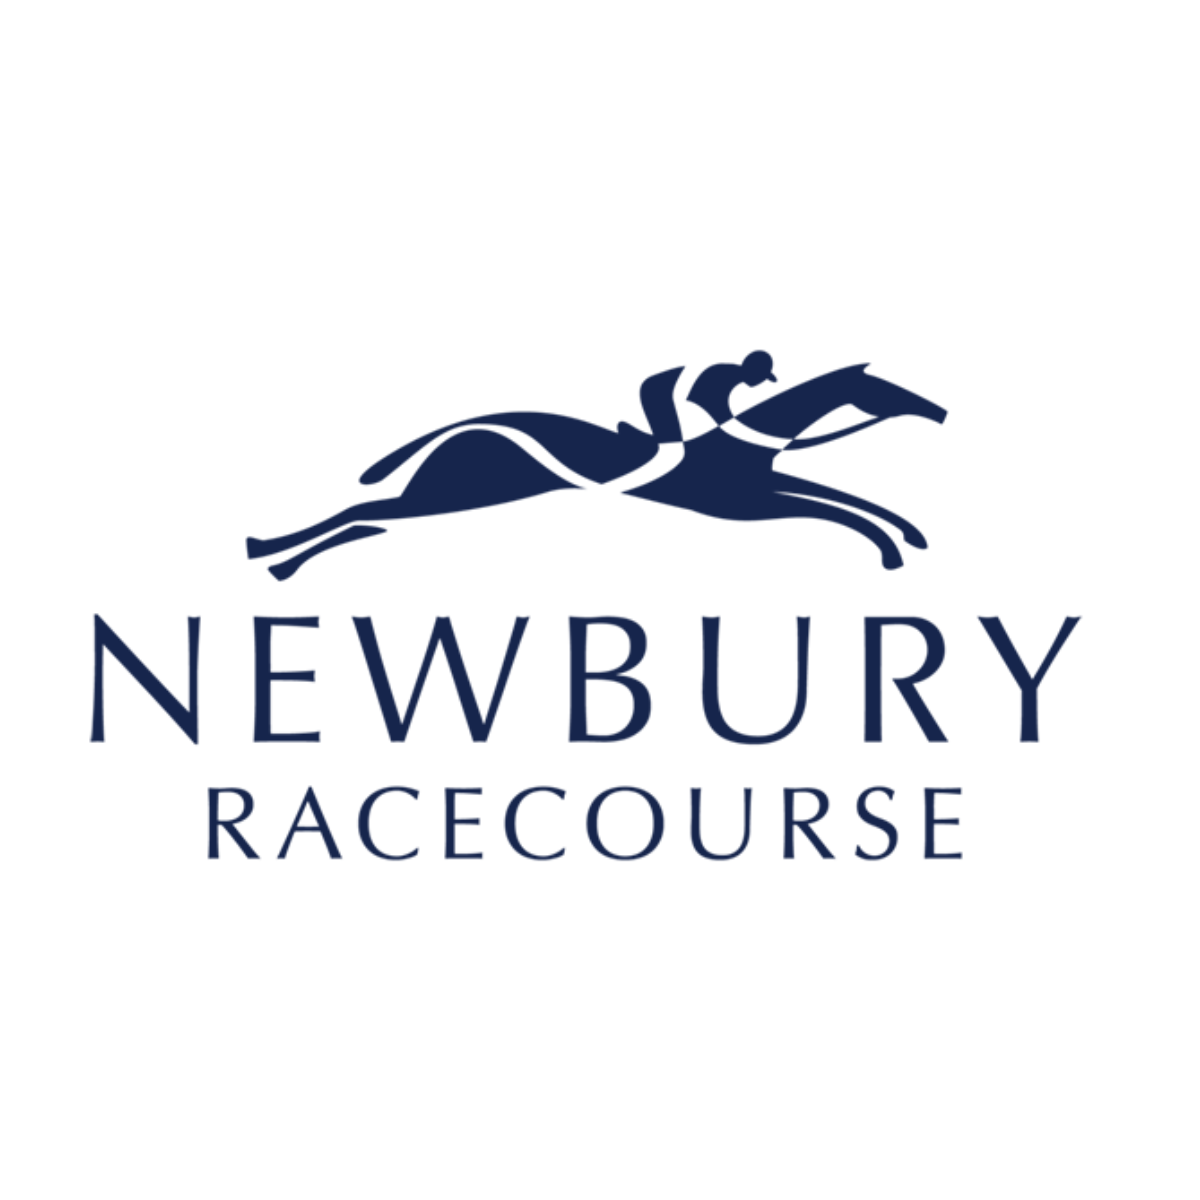 Newbury Racecourse